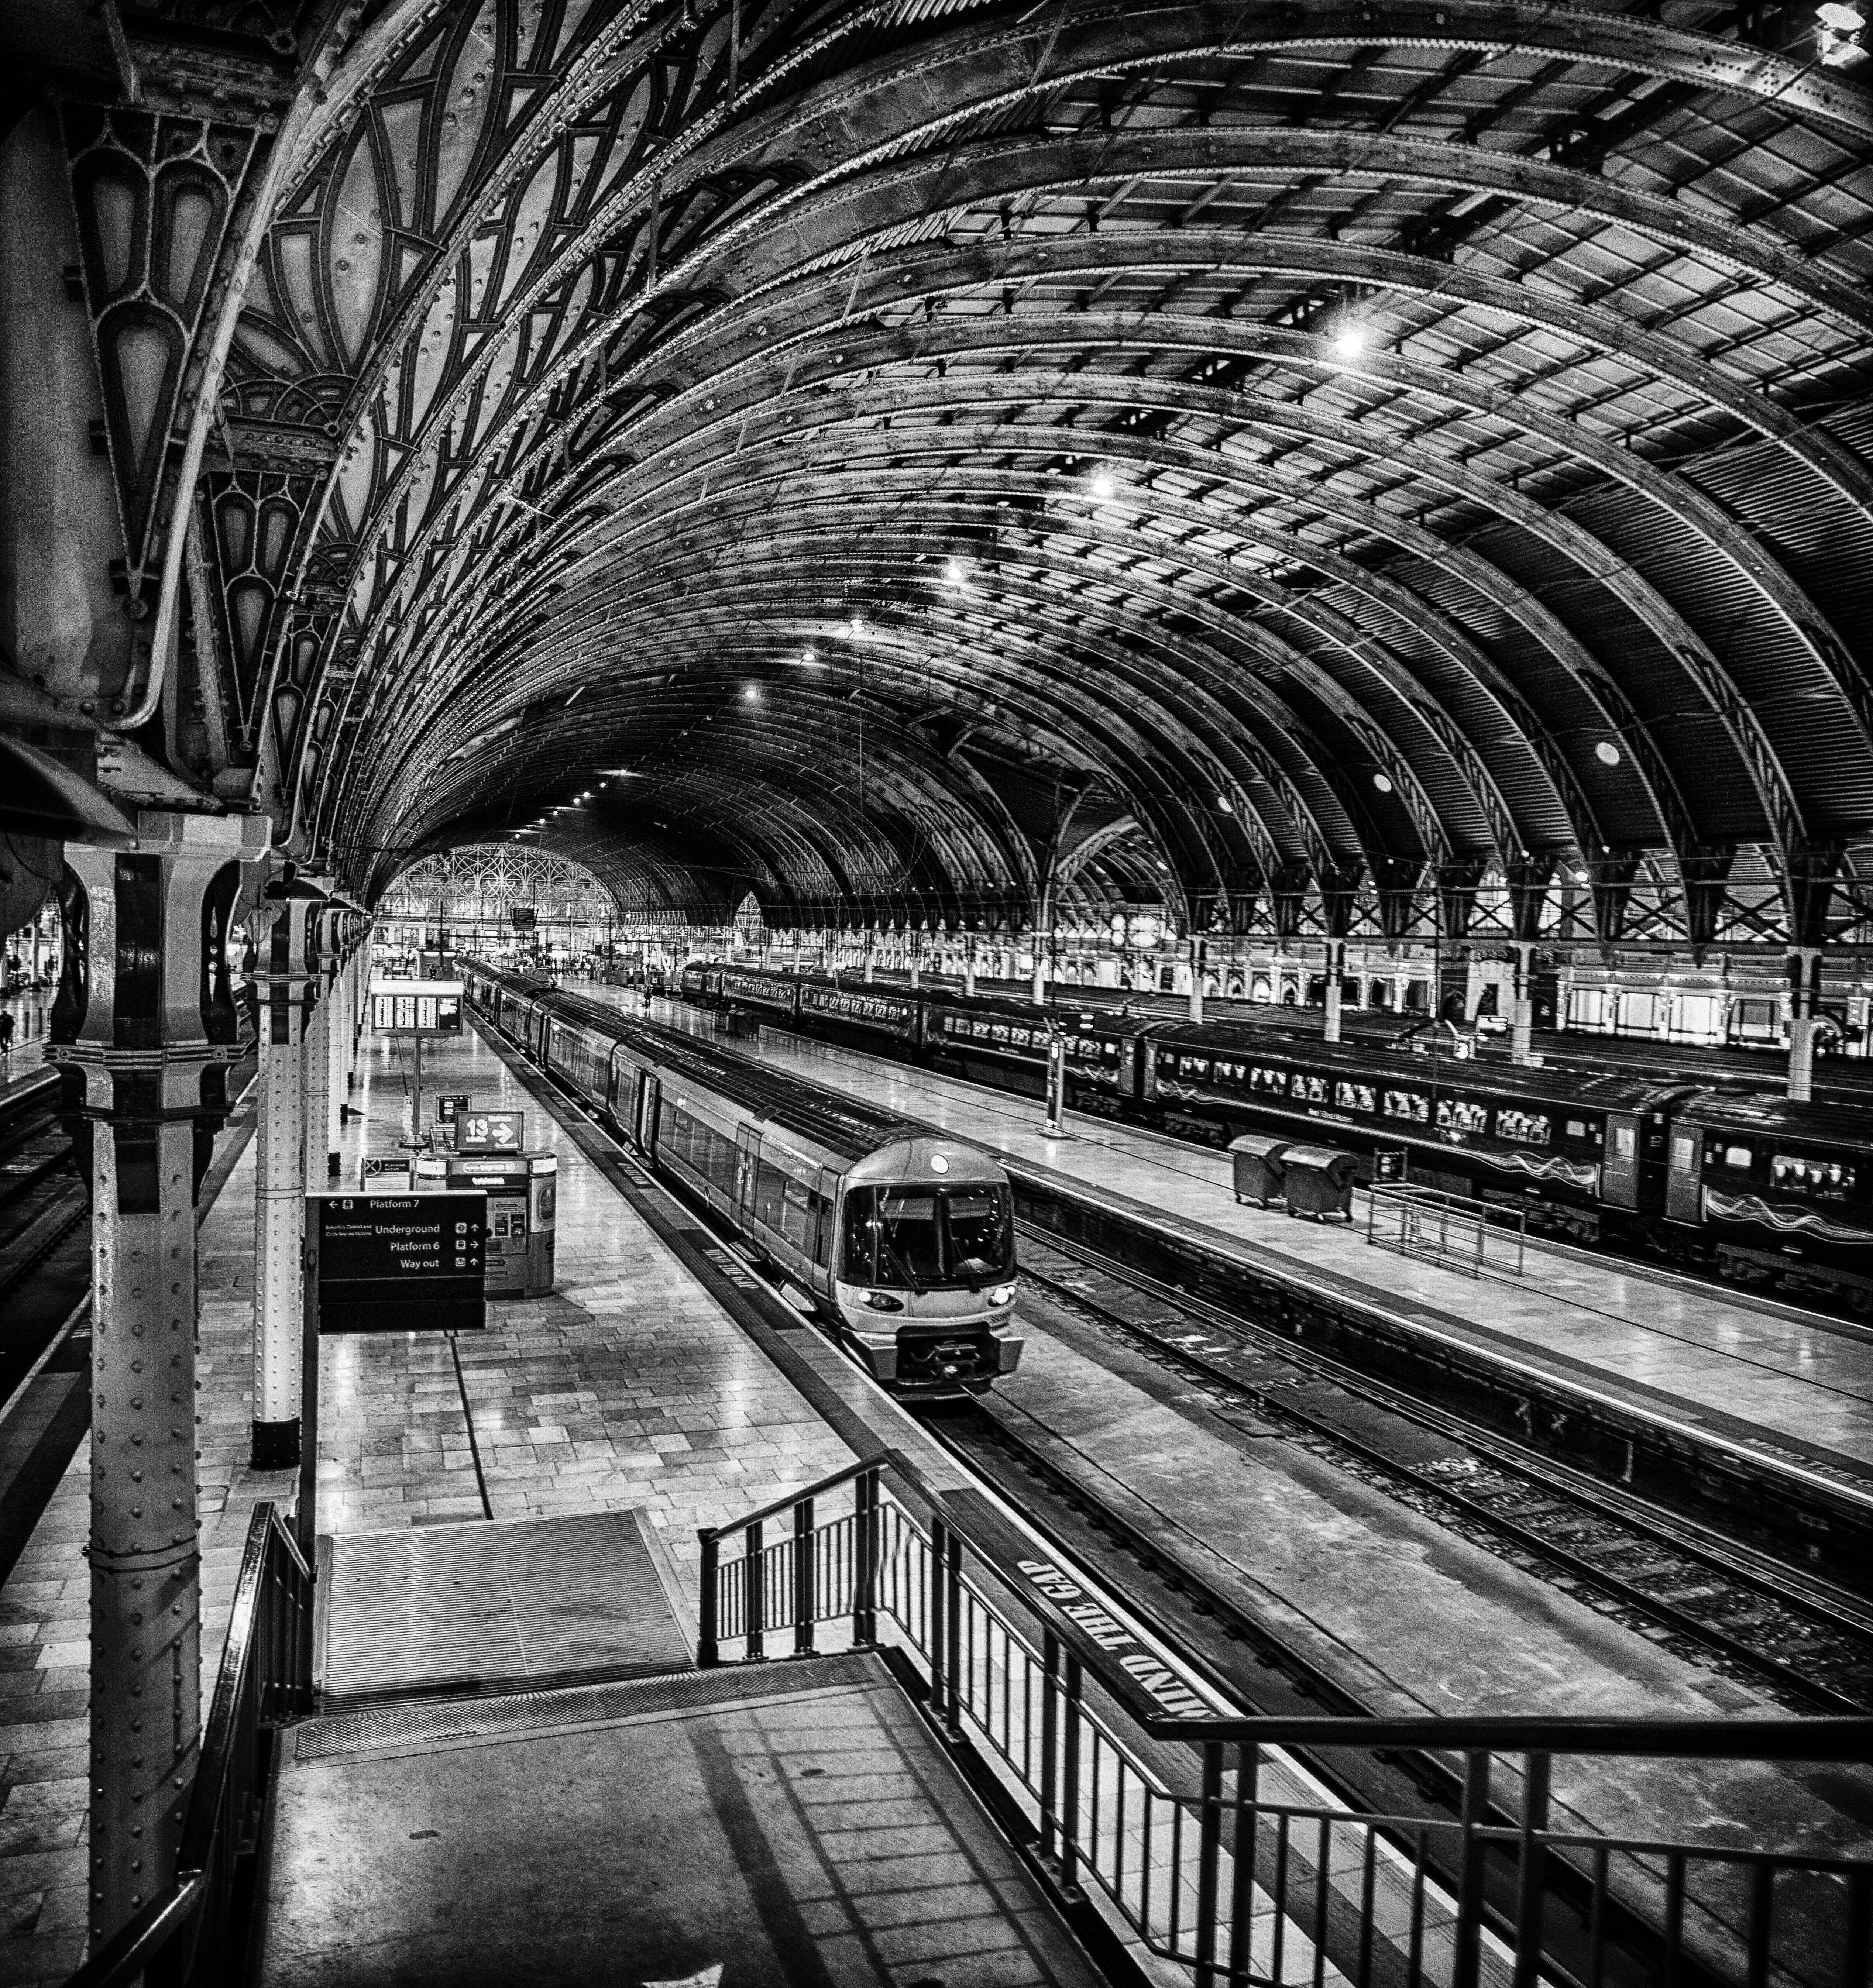 Railways london. Лондон-юстон (станция). Вокзал Кингс кросс в Лондоне. Вокзал Англия 19 век. Железнодорожный вокзал Англия 19 век.